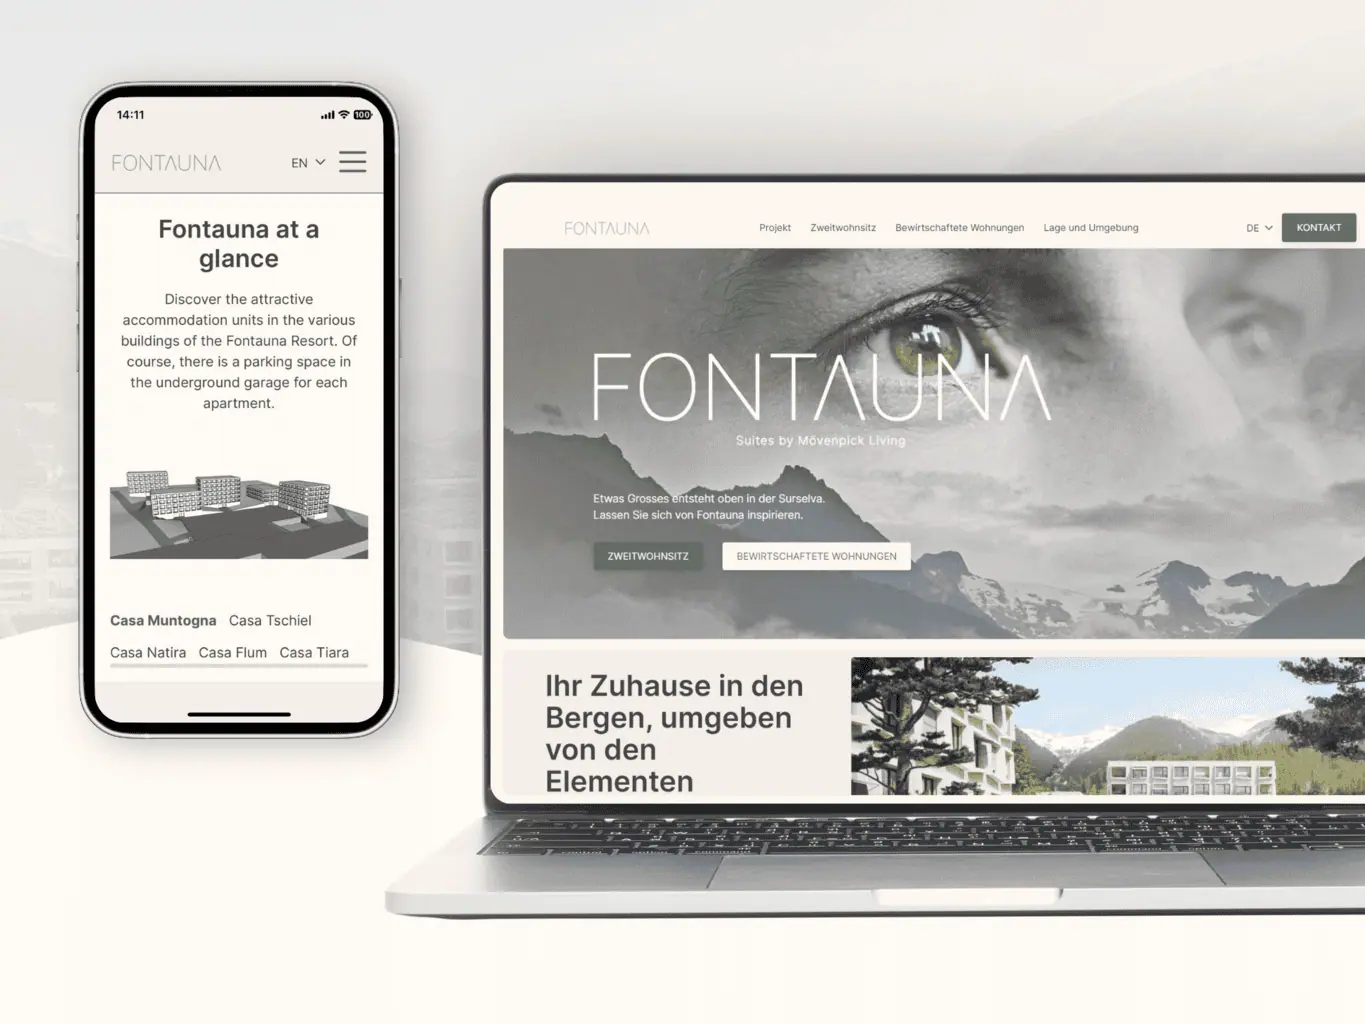 Ein Smartphone und ein Laptop, auf denen eine Webseite für ein Wohnprojekt namens „Fontauna“ mit Informationen und Bildern der Siedlung und der umgebenden Landschaft angezeigt wird, wodurch die neueste Ergänzung unseres Grafikdesign-Portfolios hervorgehoben wird.